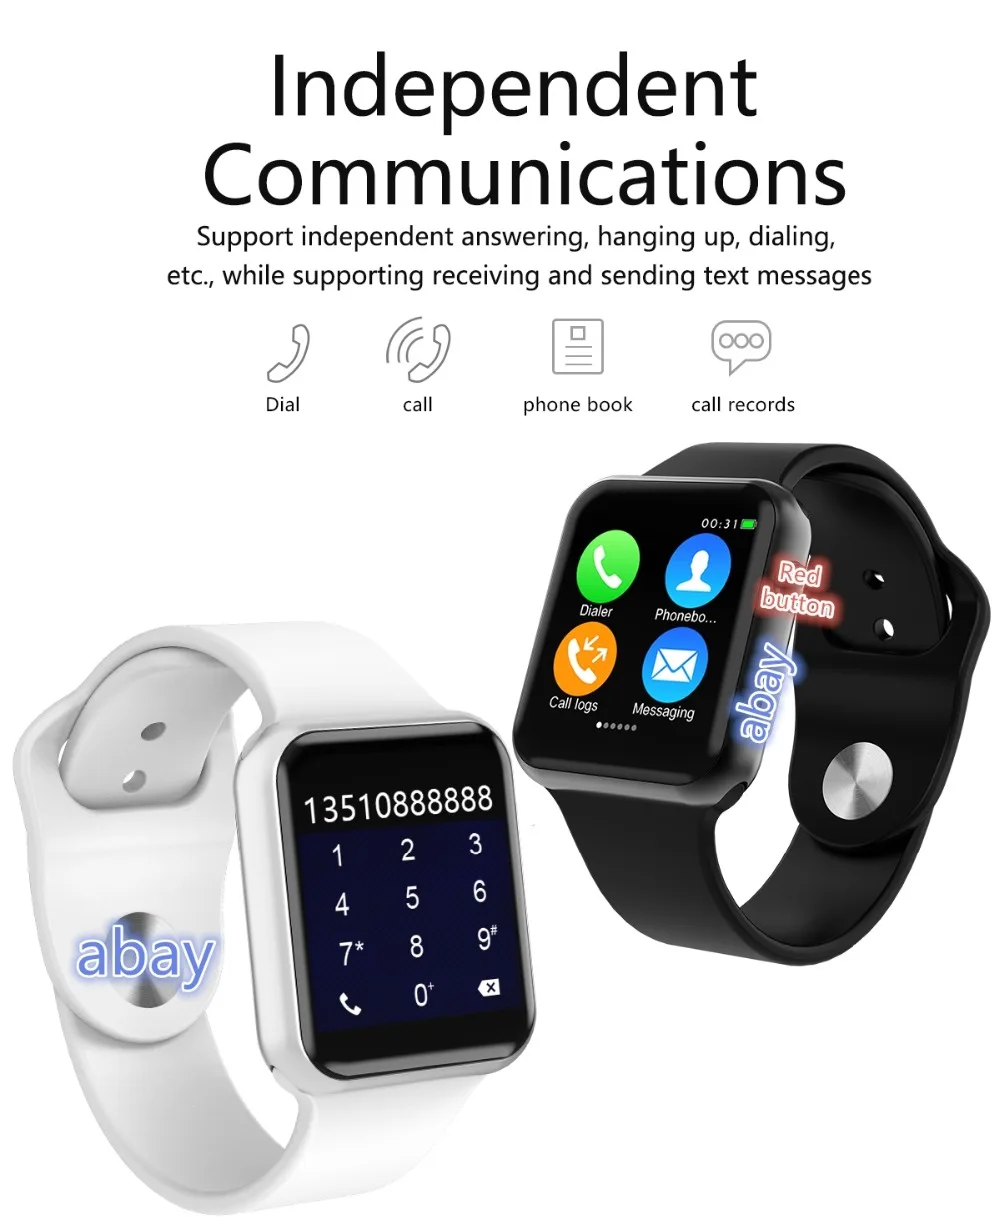 O88 Bluetooth Смарт-часы новые обновления серии 4 чехол для Apple iOS iPhone Xiaomi Android смартфон - Фото №1